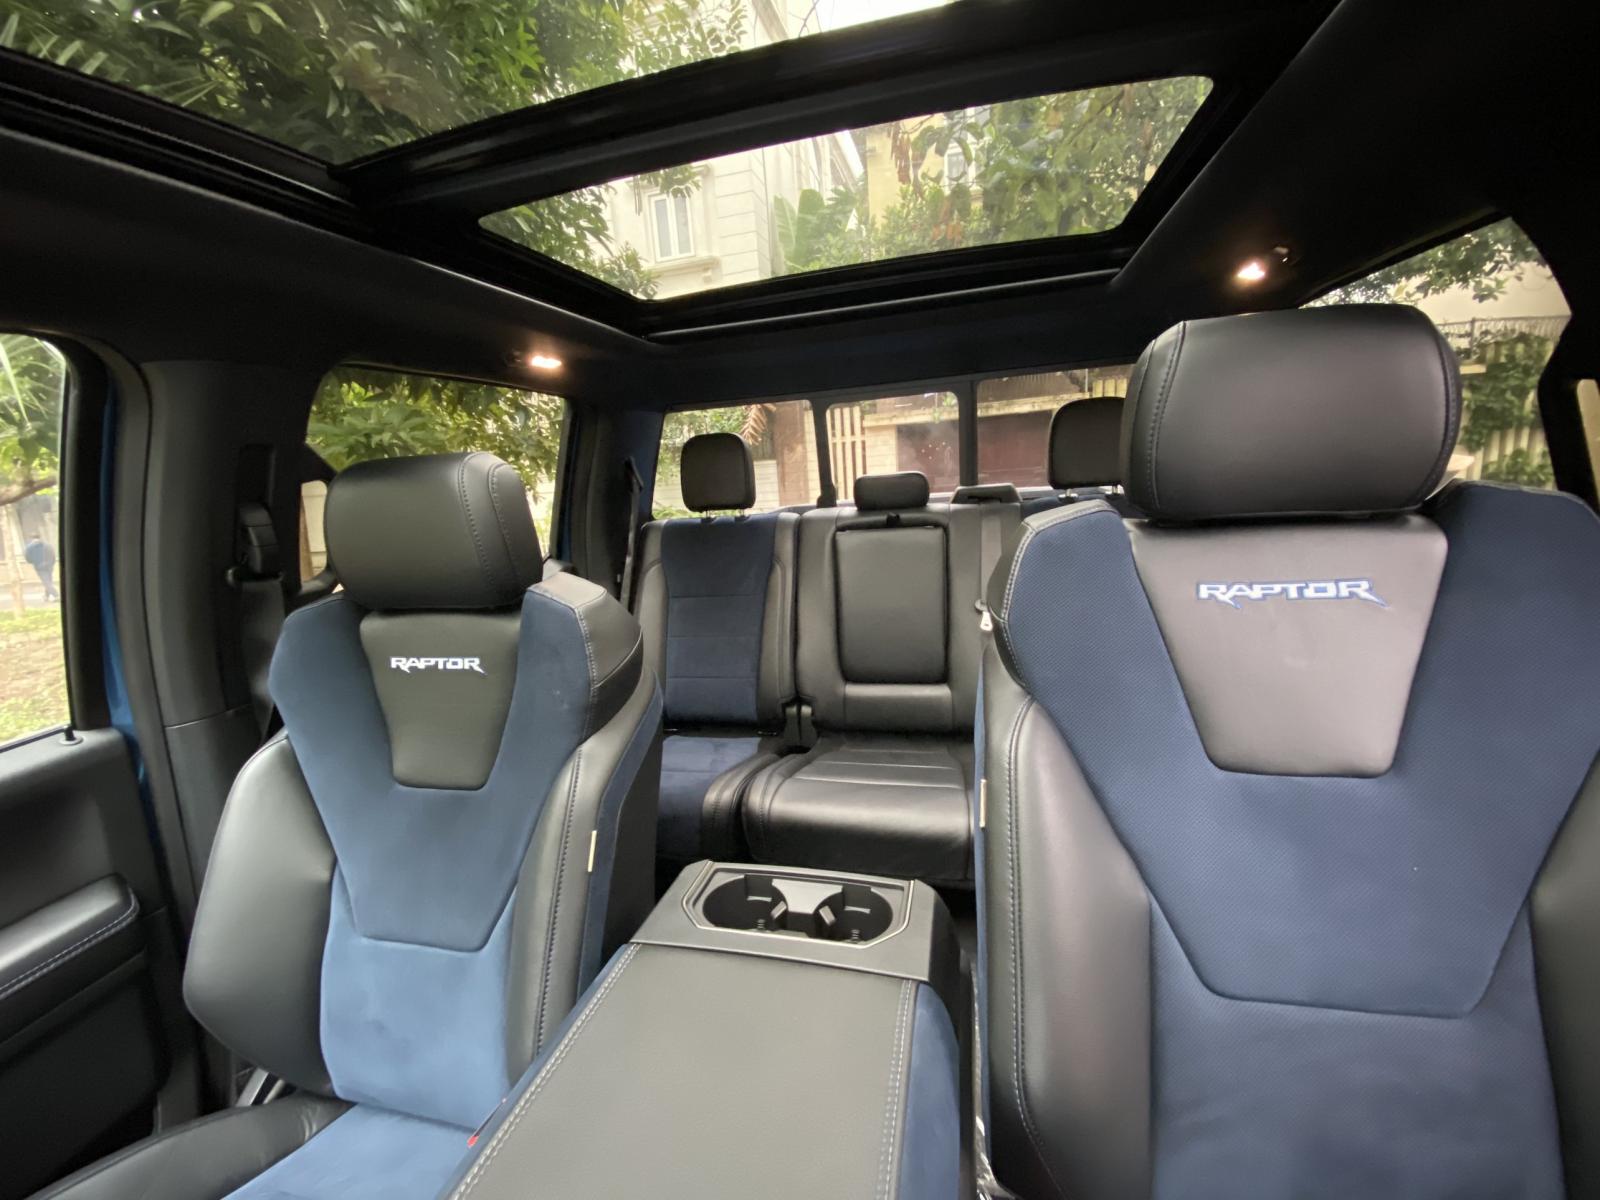 Ford F150 Raptor 2020, màu xanh, nhập khẩu Mỹ - Giá tốt nhất Hà Nội